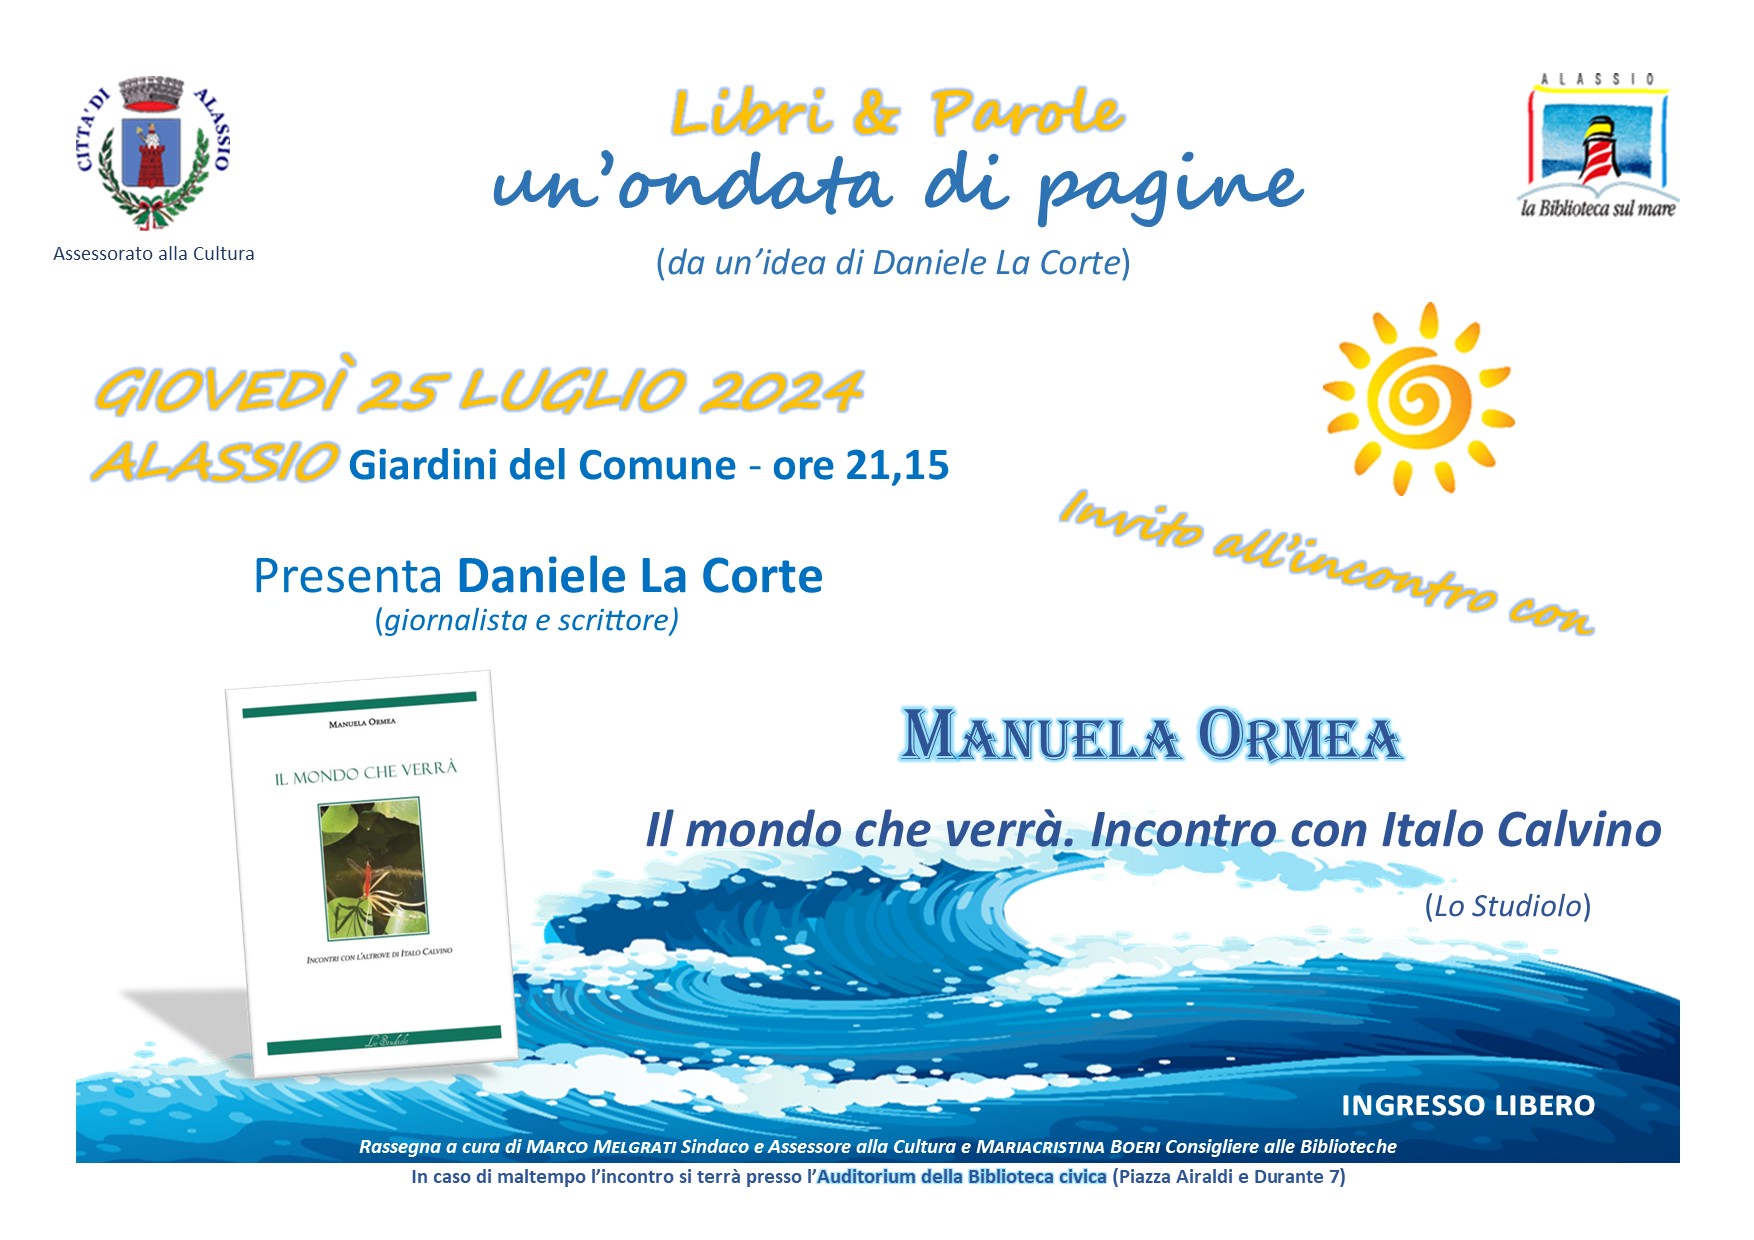 “Libri & Parole -Un’ondata di pagine”: giovedì 25 luglio Manuela Ormea racconta Italo Calvino